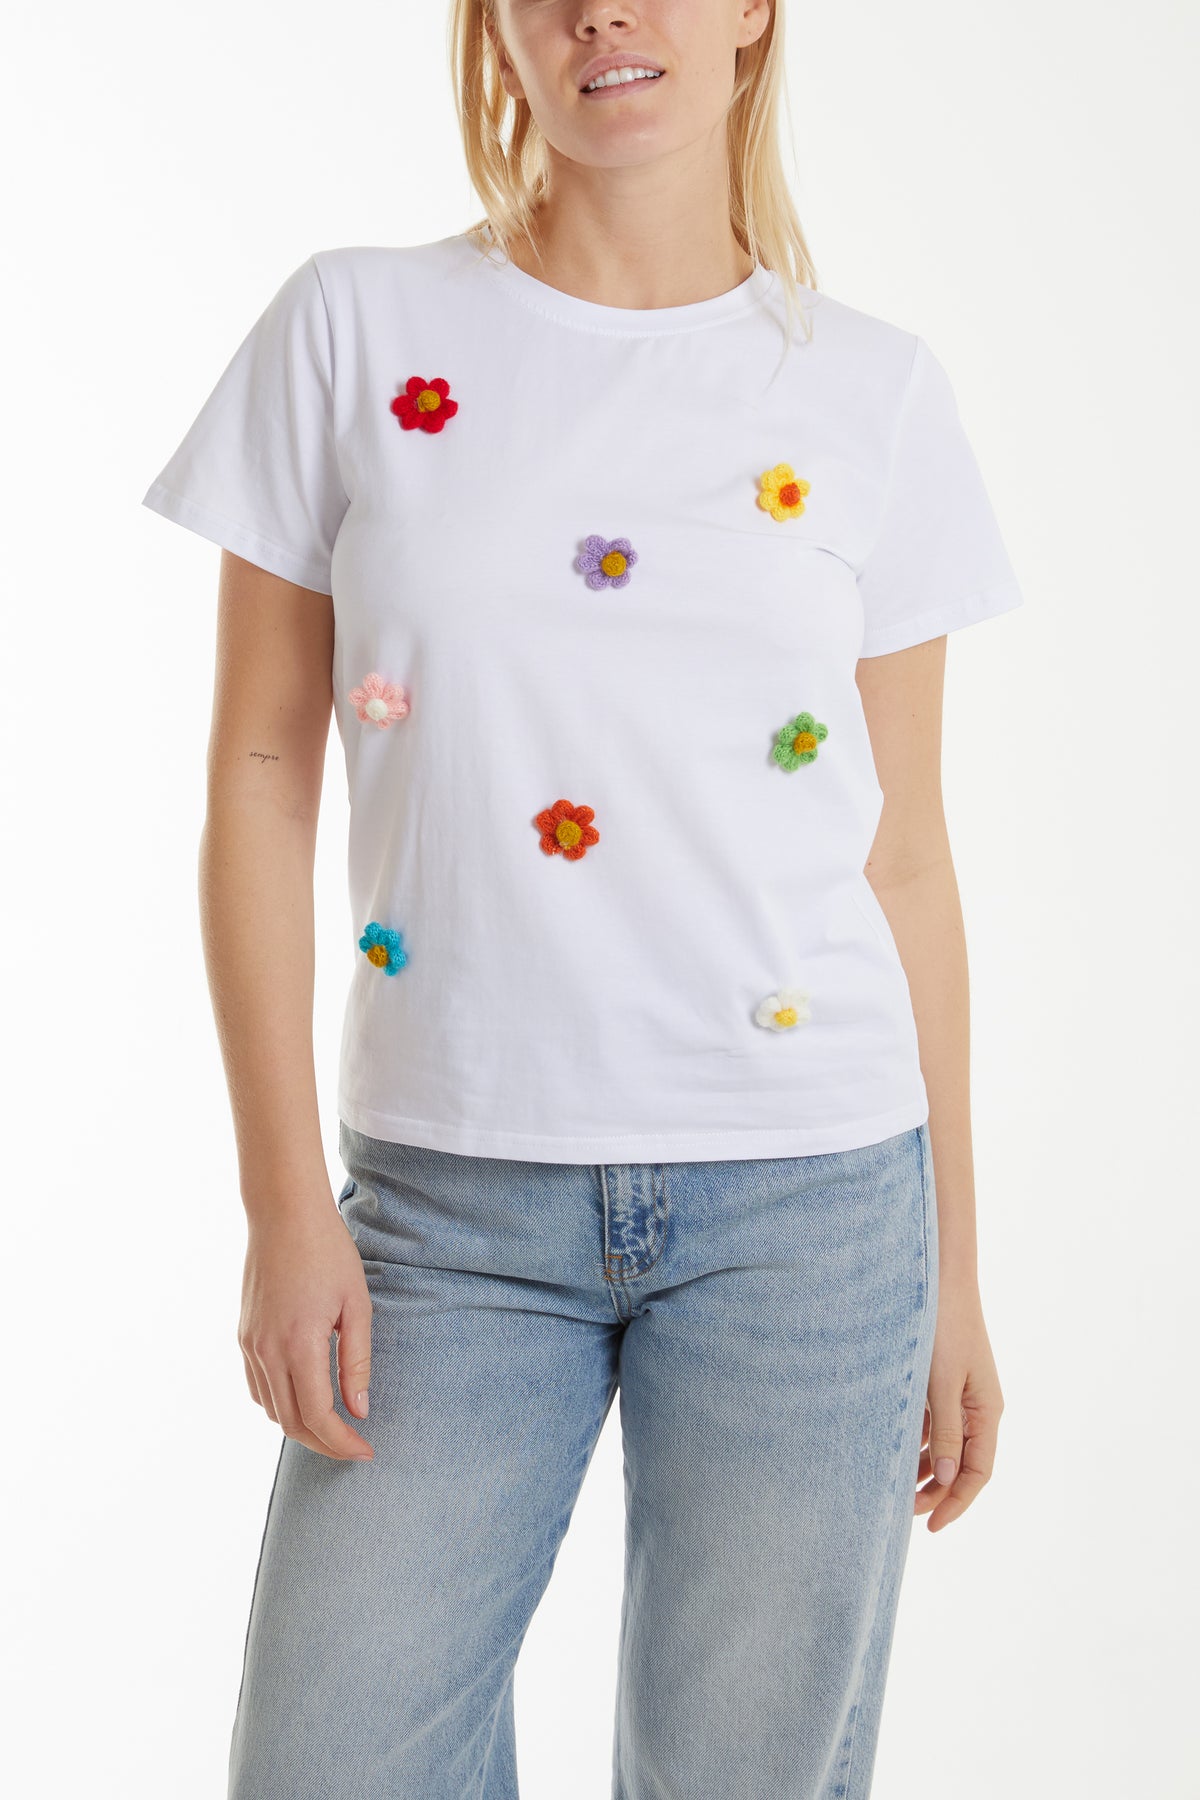 Flocking Colour Flowers T-Shirt